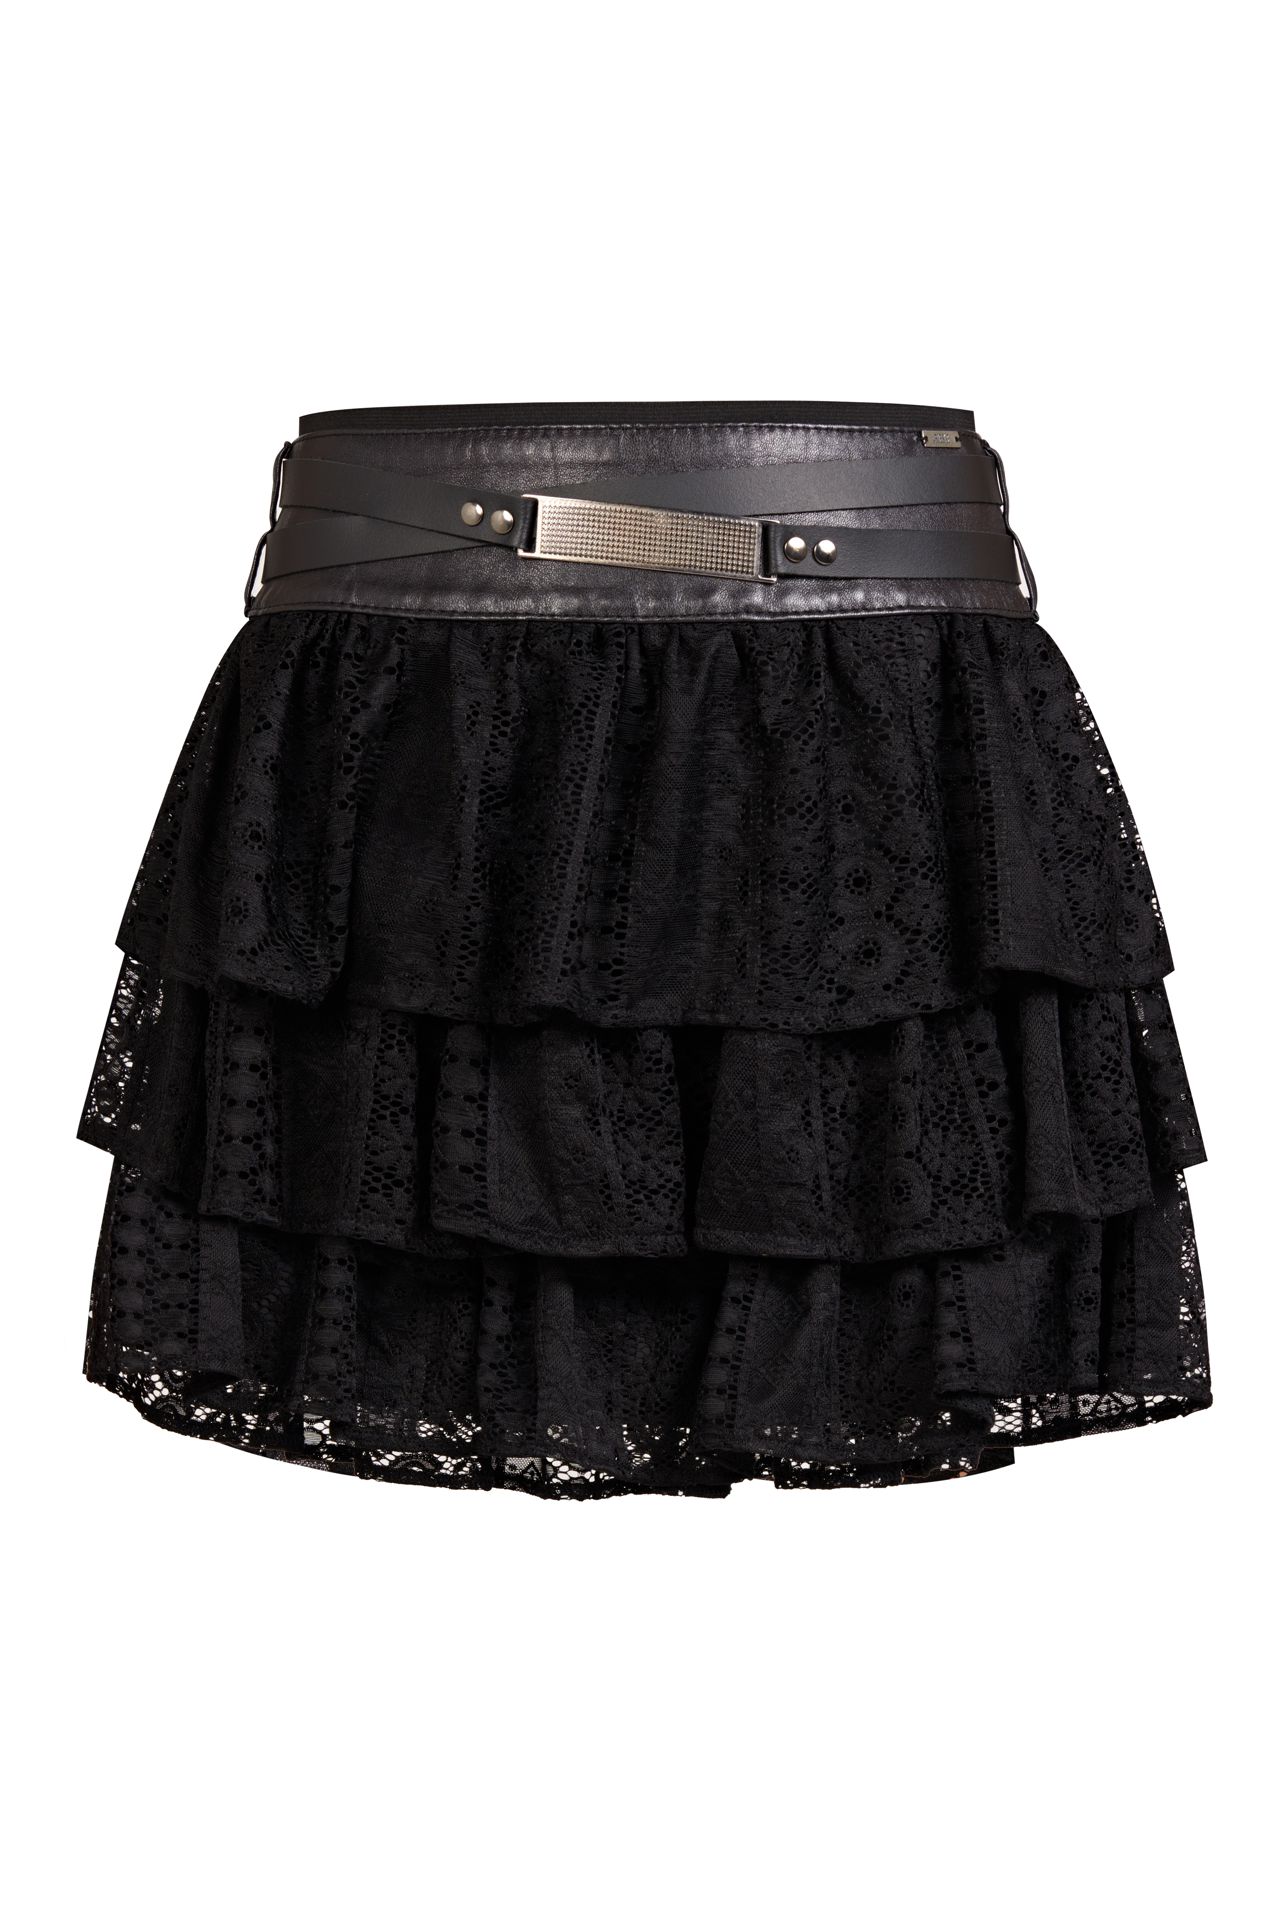 lace skirt, black skirt, black skirt polish brand, black skirt for wedding, must have, lacy skirt bestseller, black skirt hit by rieske, limited skirt with leather yoke, polish designer skirt, made in poland skirt